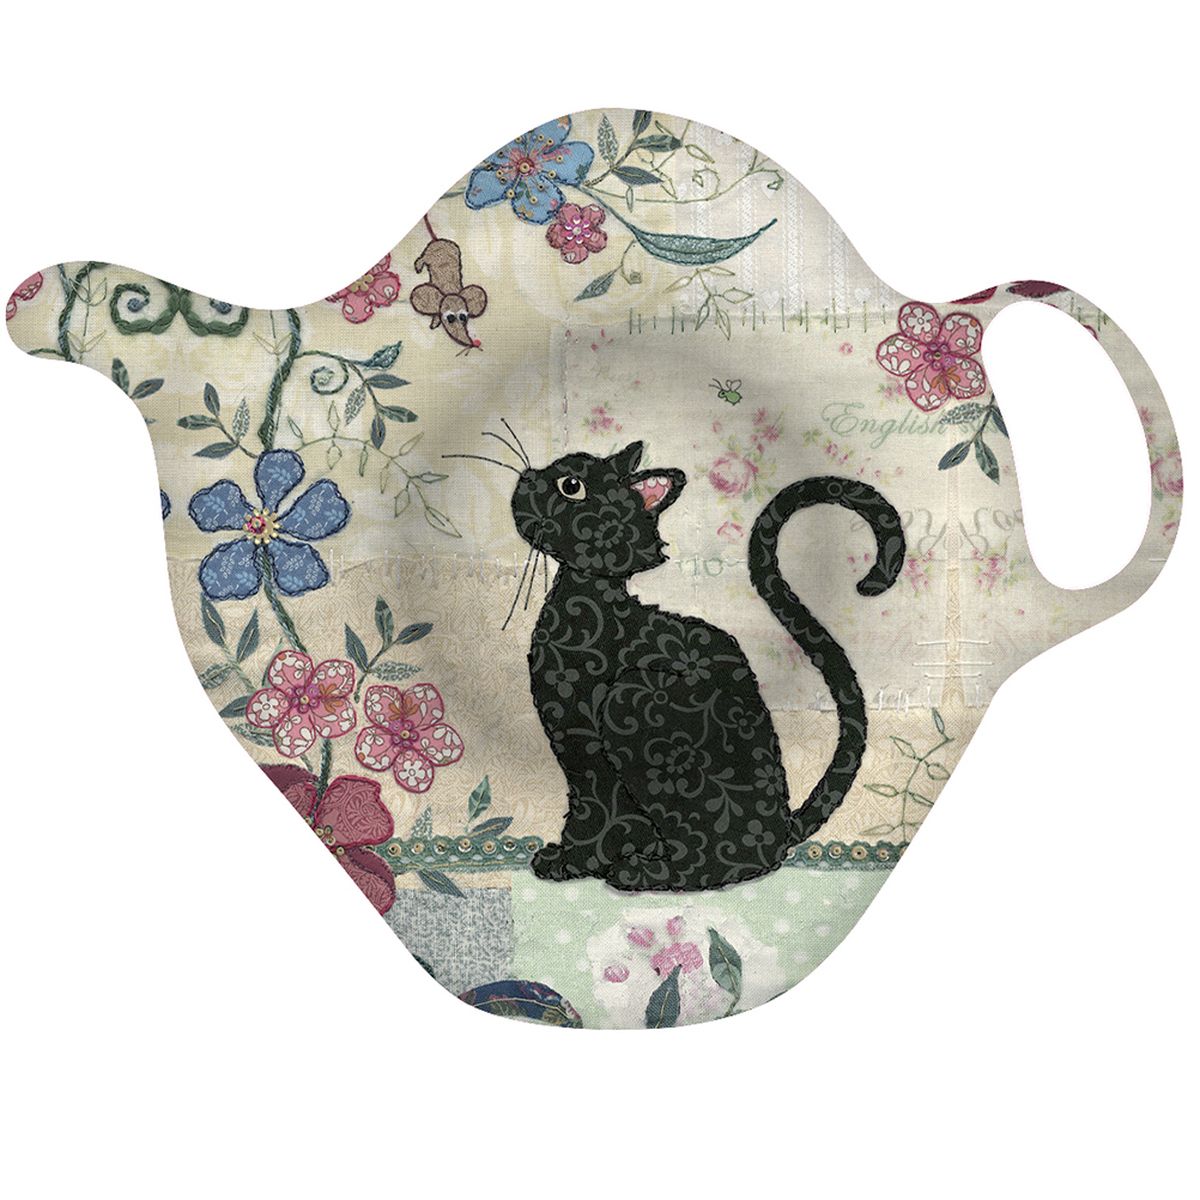 Cat saucer for tea bag